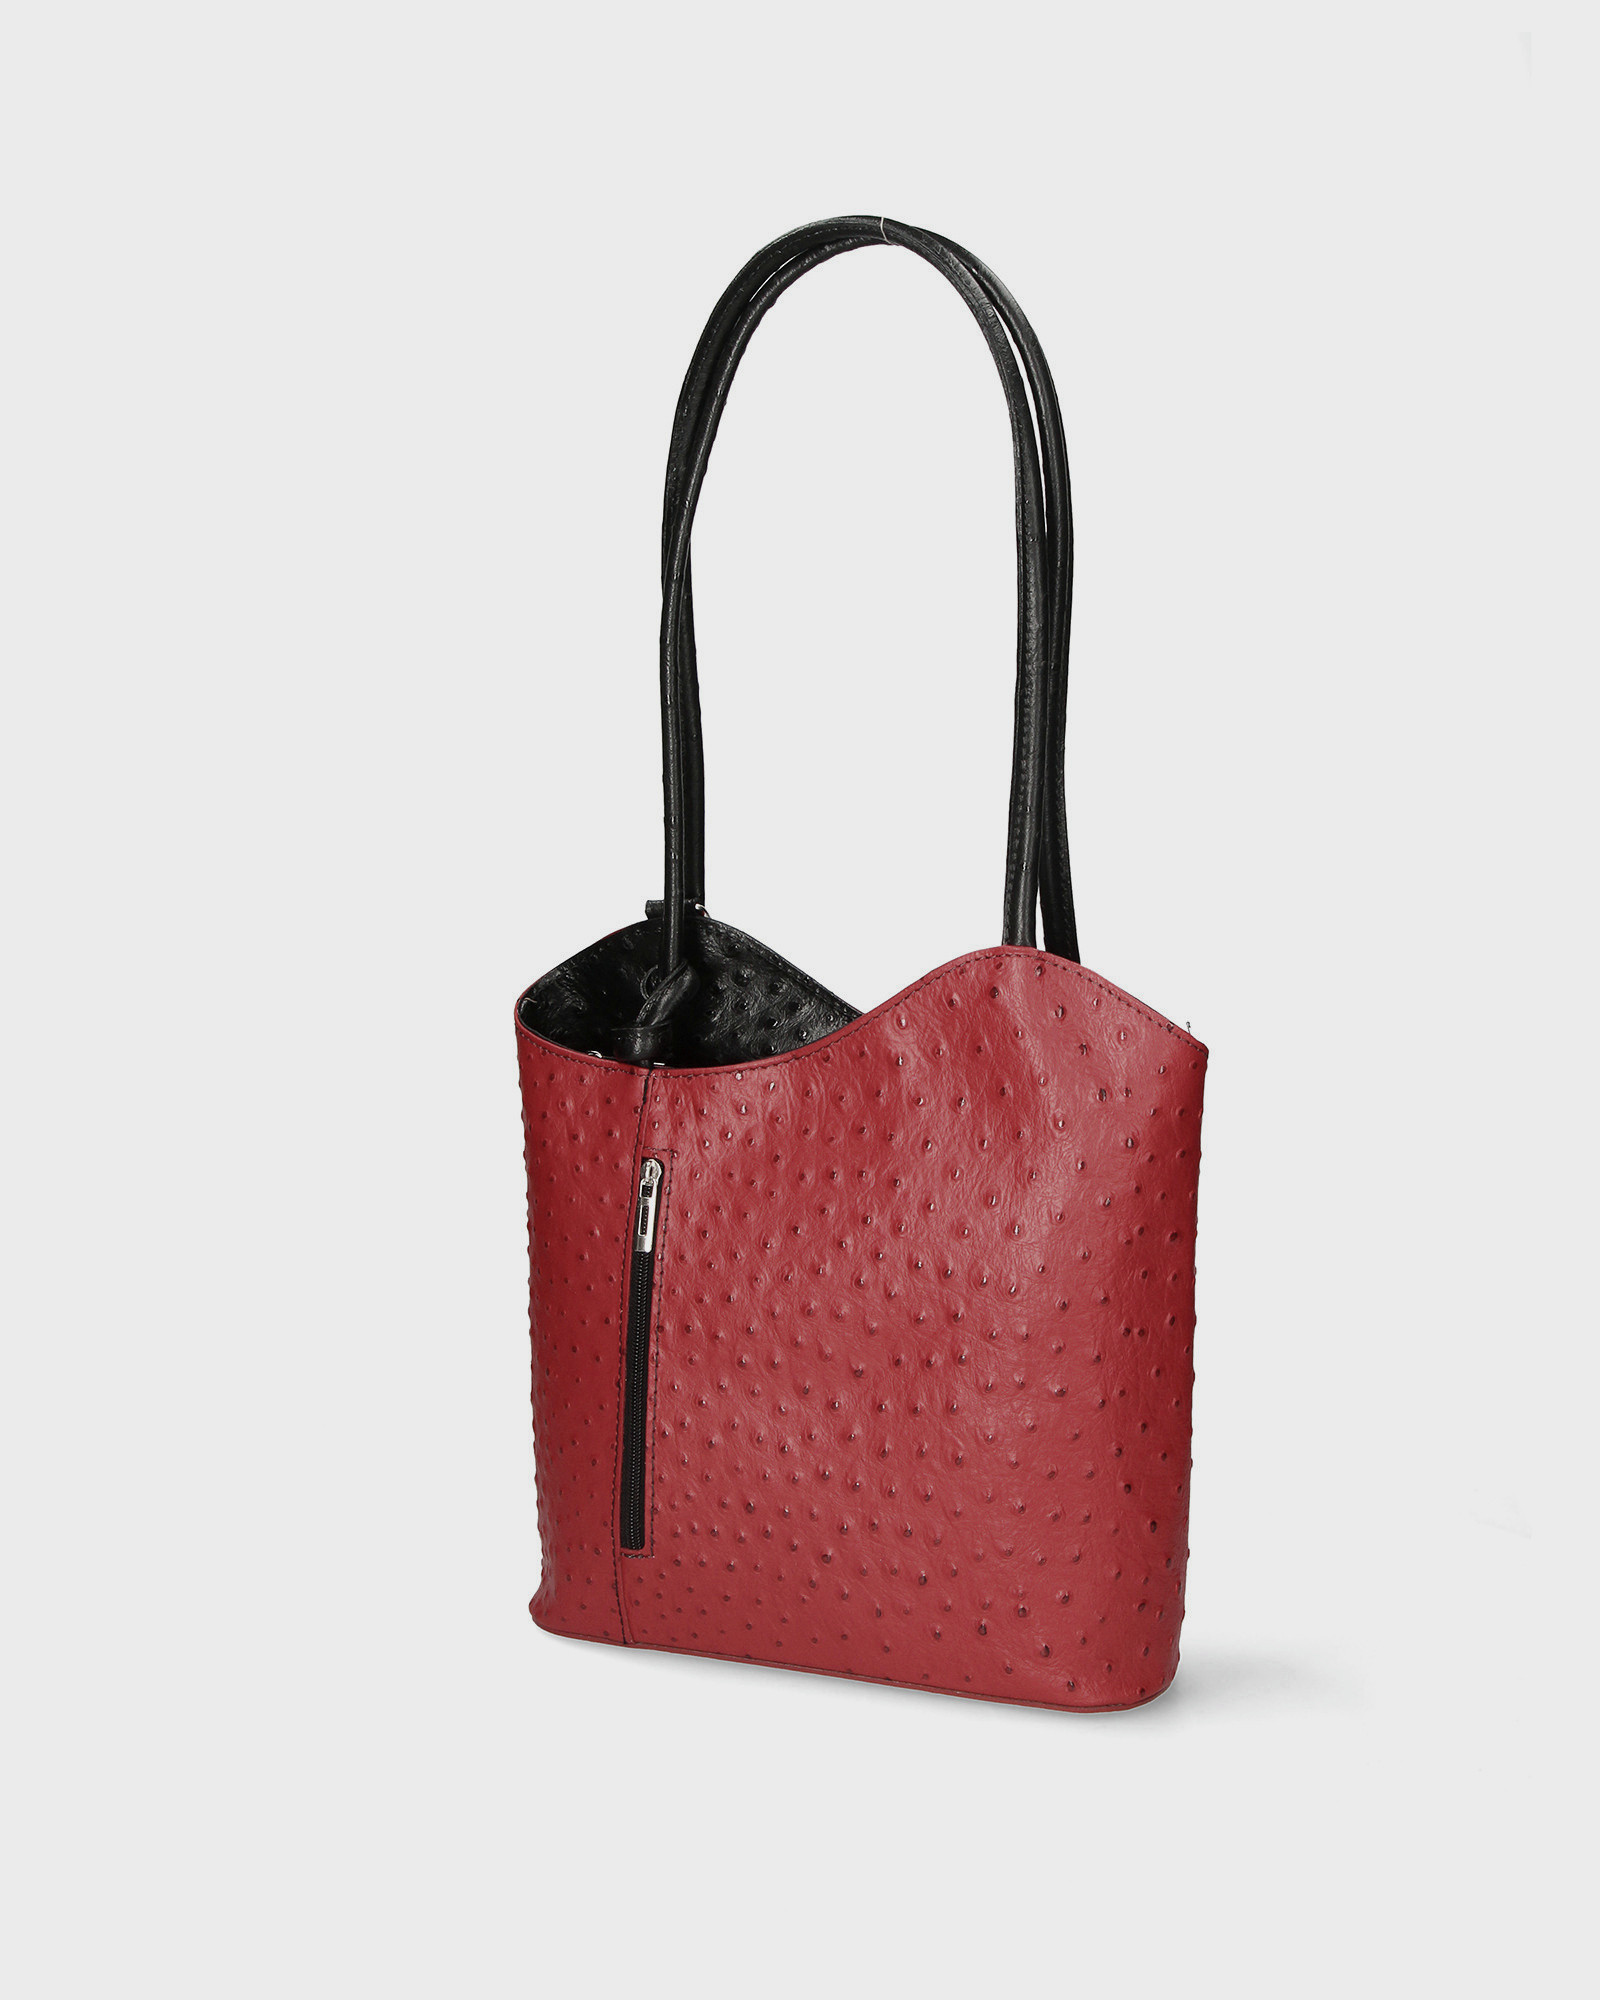 Stylová designová červená s černou kožená kabelka přes rameno Royal